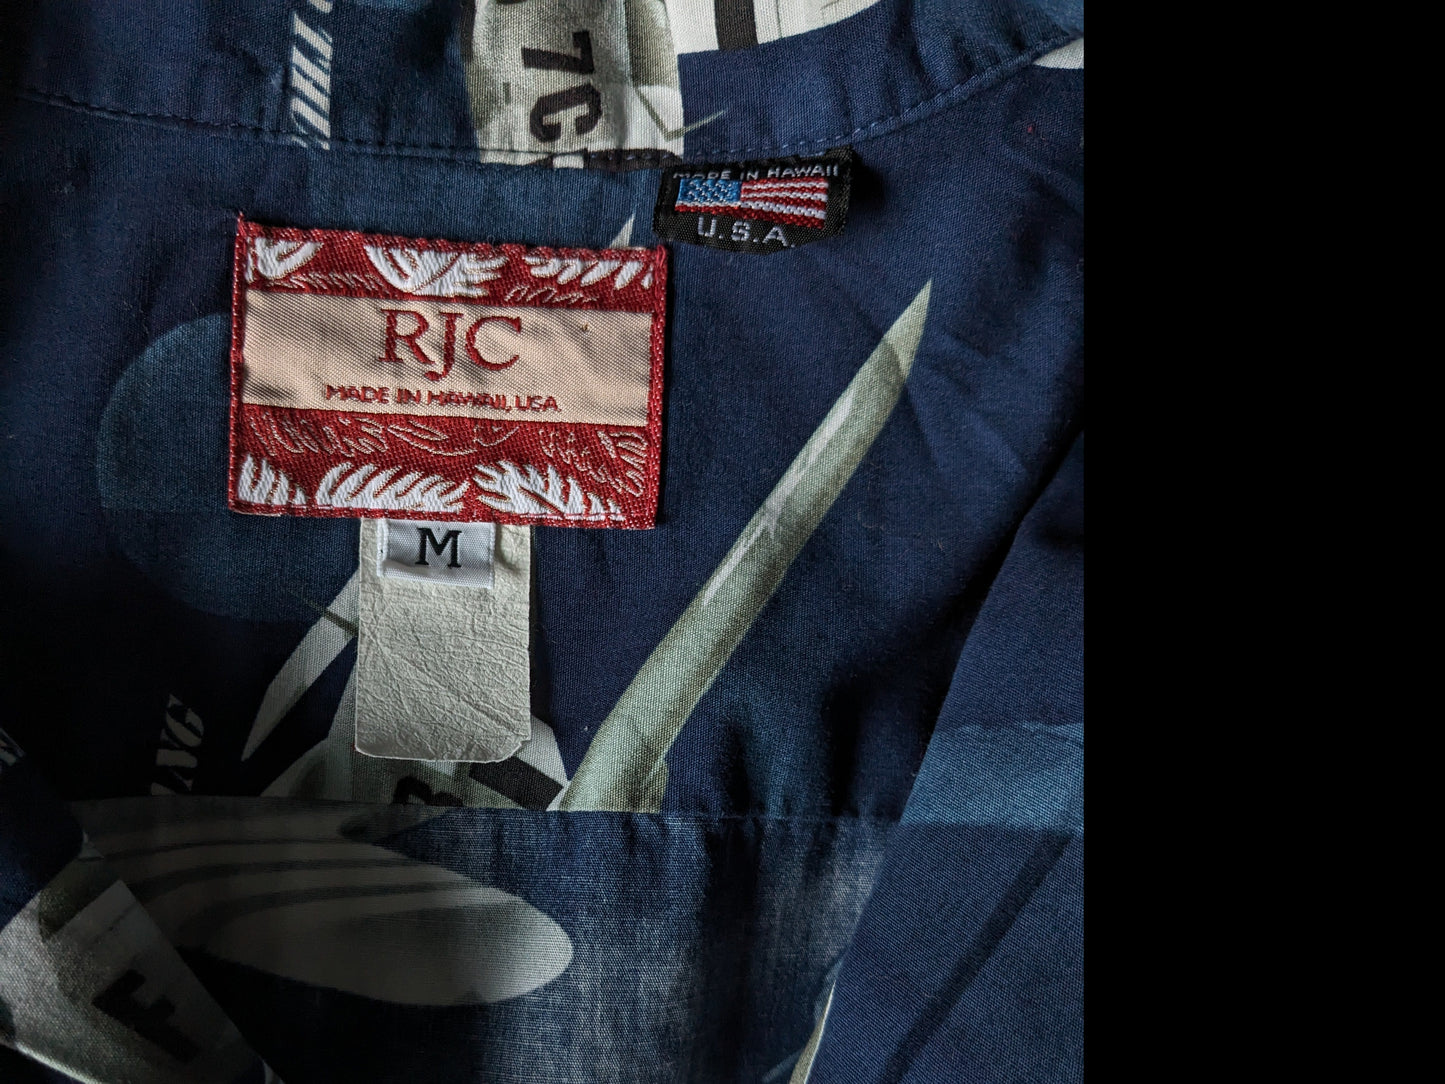 RJC Original Hawaii Shirt Kurzarm. Blau grün weißer Druck. Größe M. Made in Hawaii.